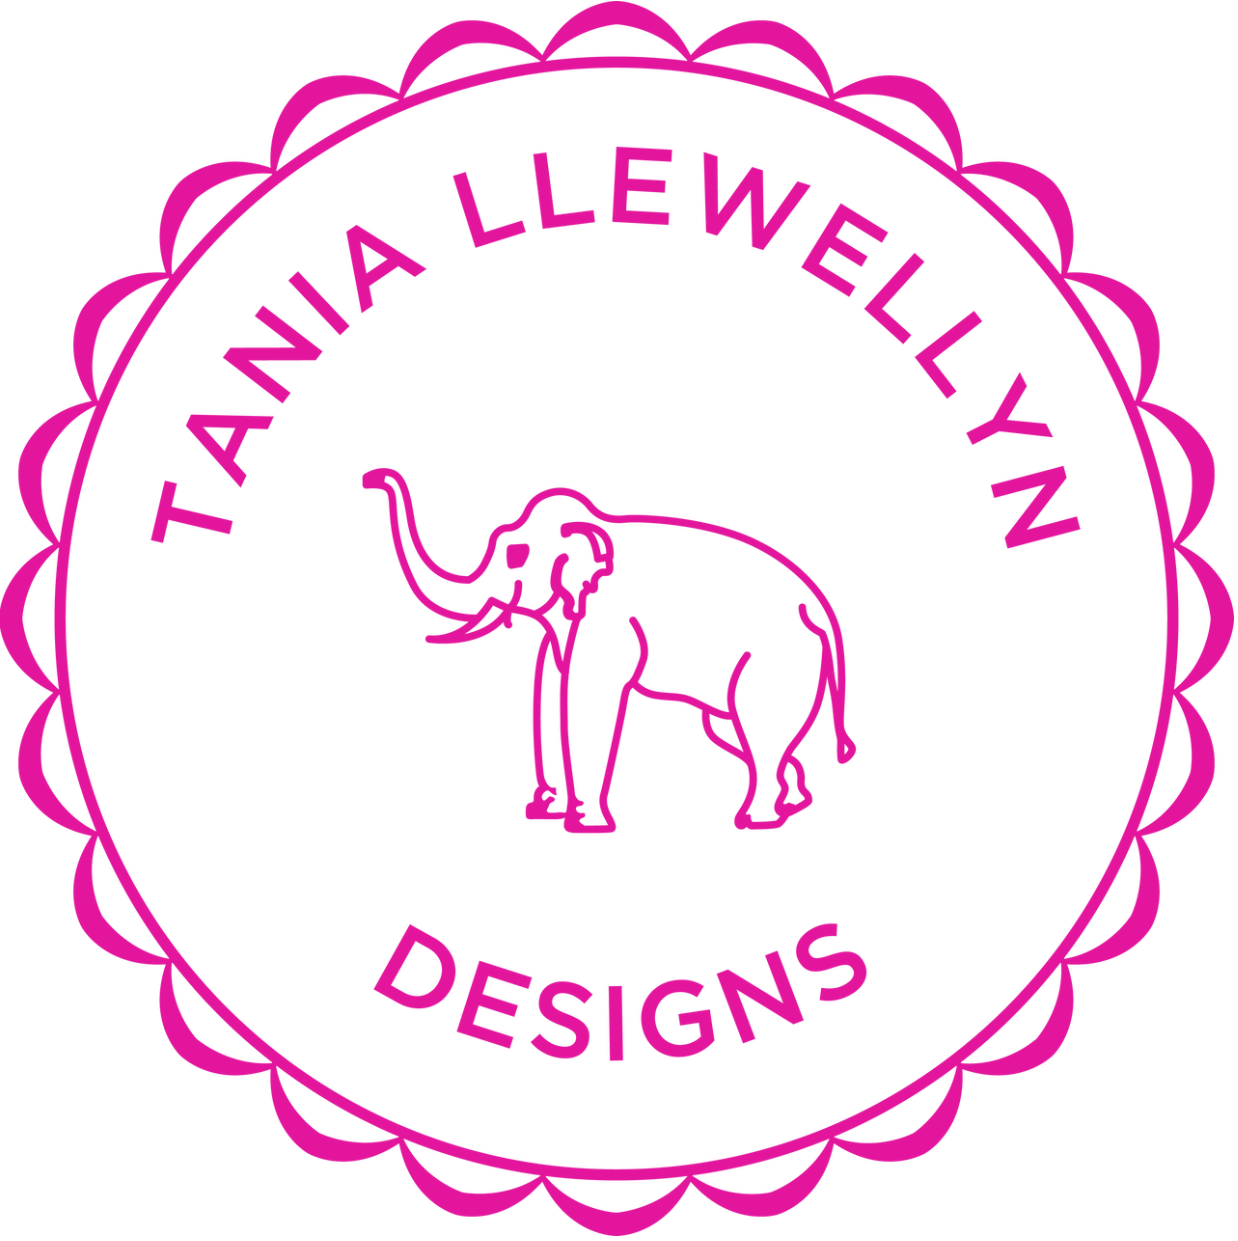 Tania Llewellyn Designs